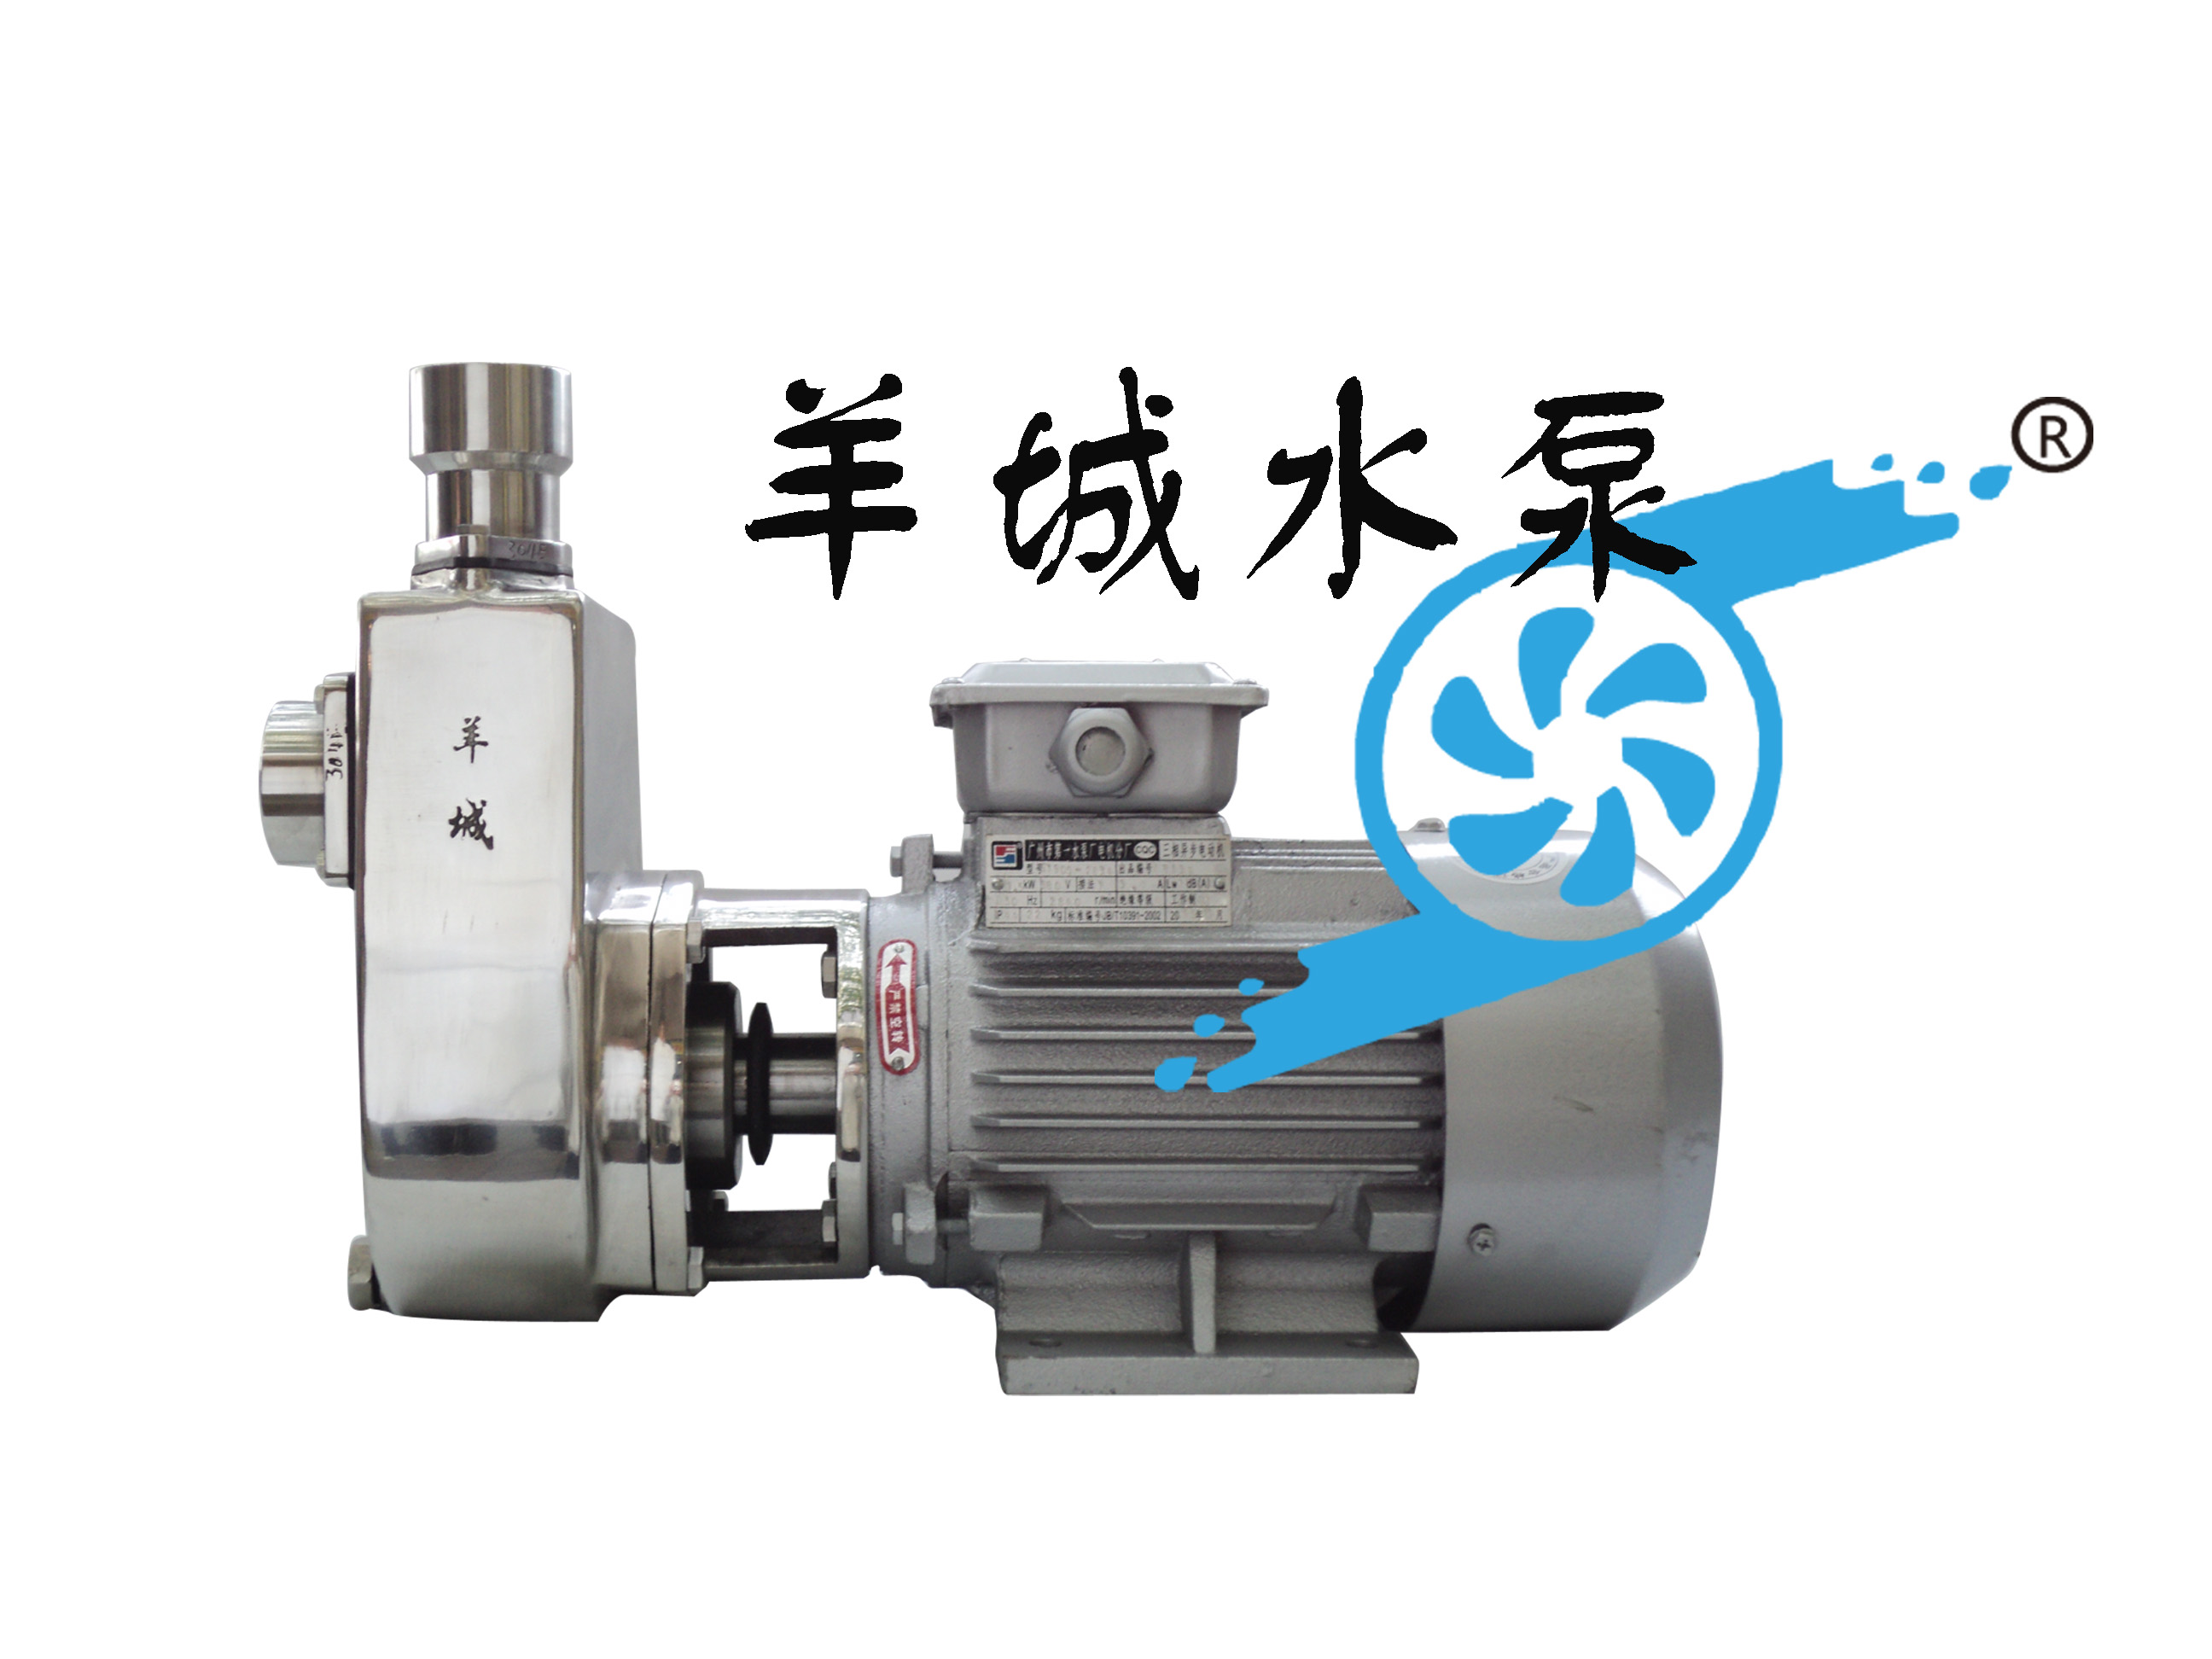 羊城水泵官方网站|FX不锈钢自吸泵|25FX-8|羊城泵业|广州羊城水泵厂|东莞化工污水泵